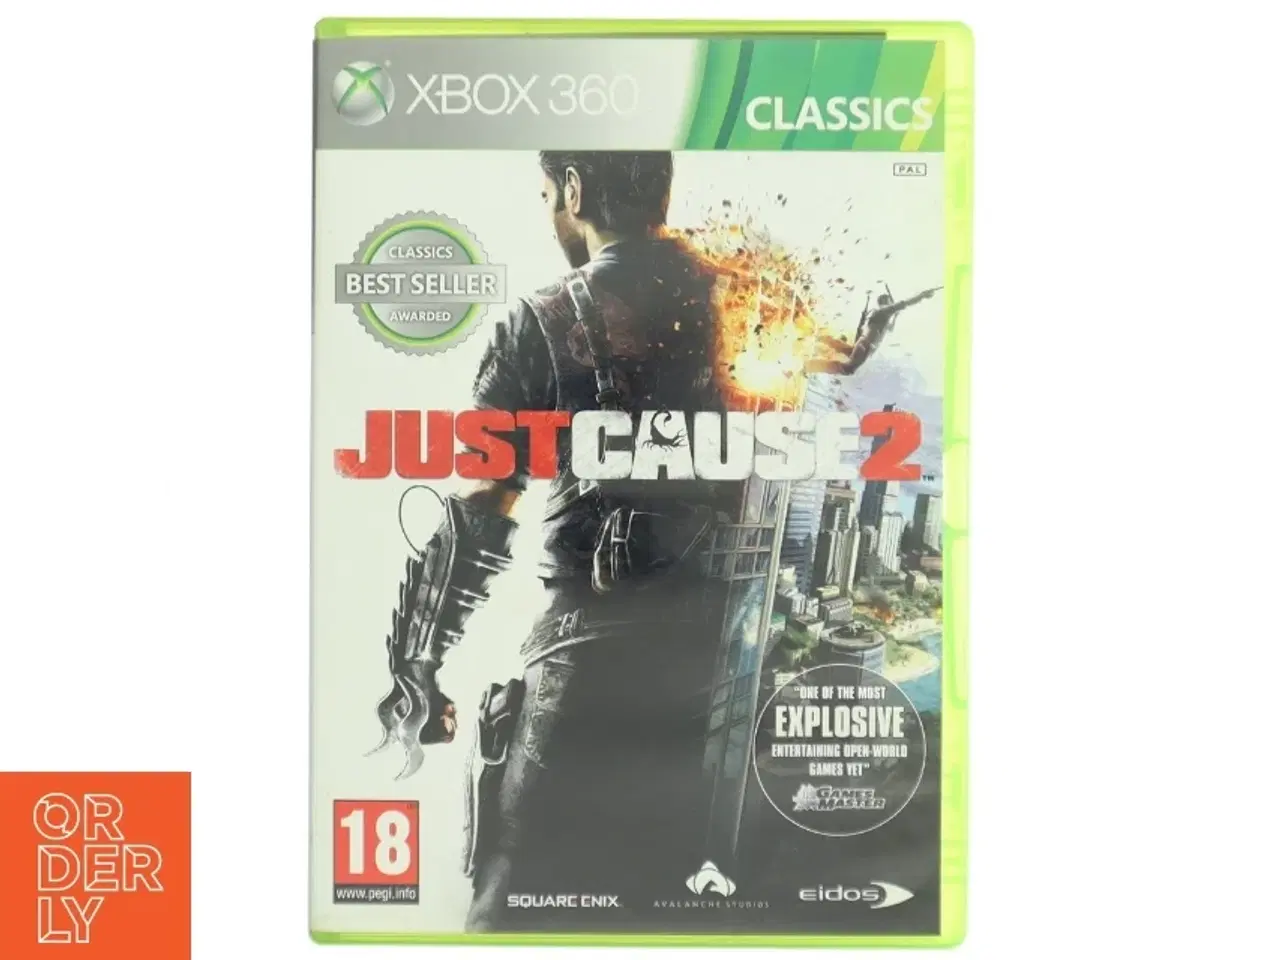 Billede 1 - Just Cause 2 Xbox 360 spil fra Square Enix